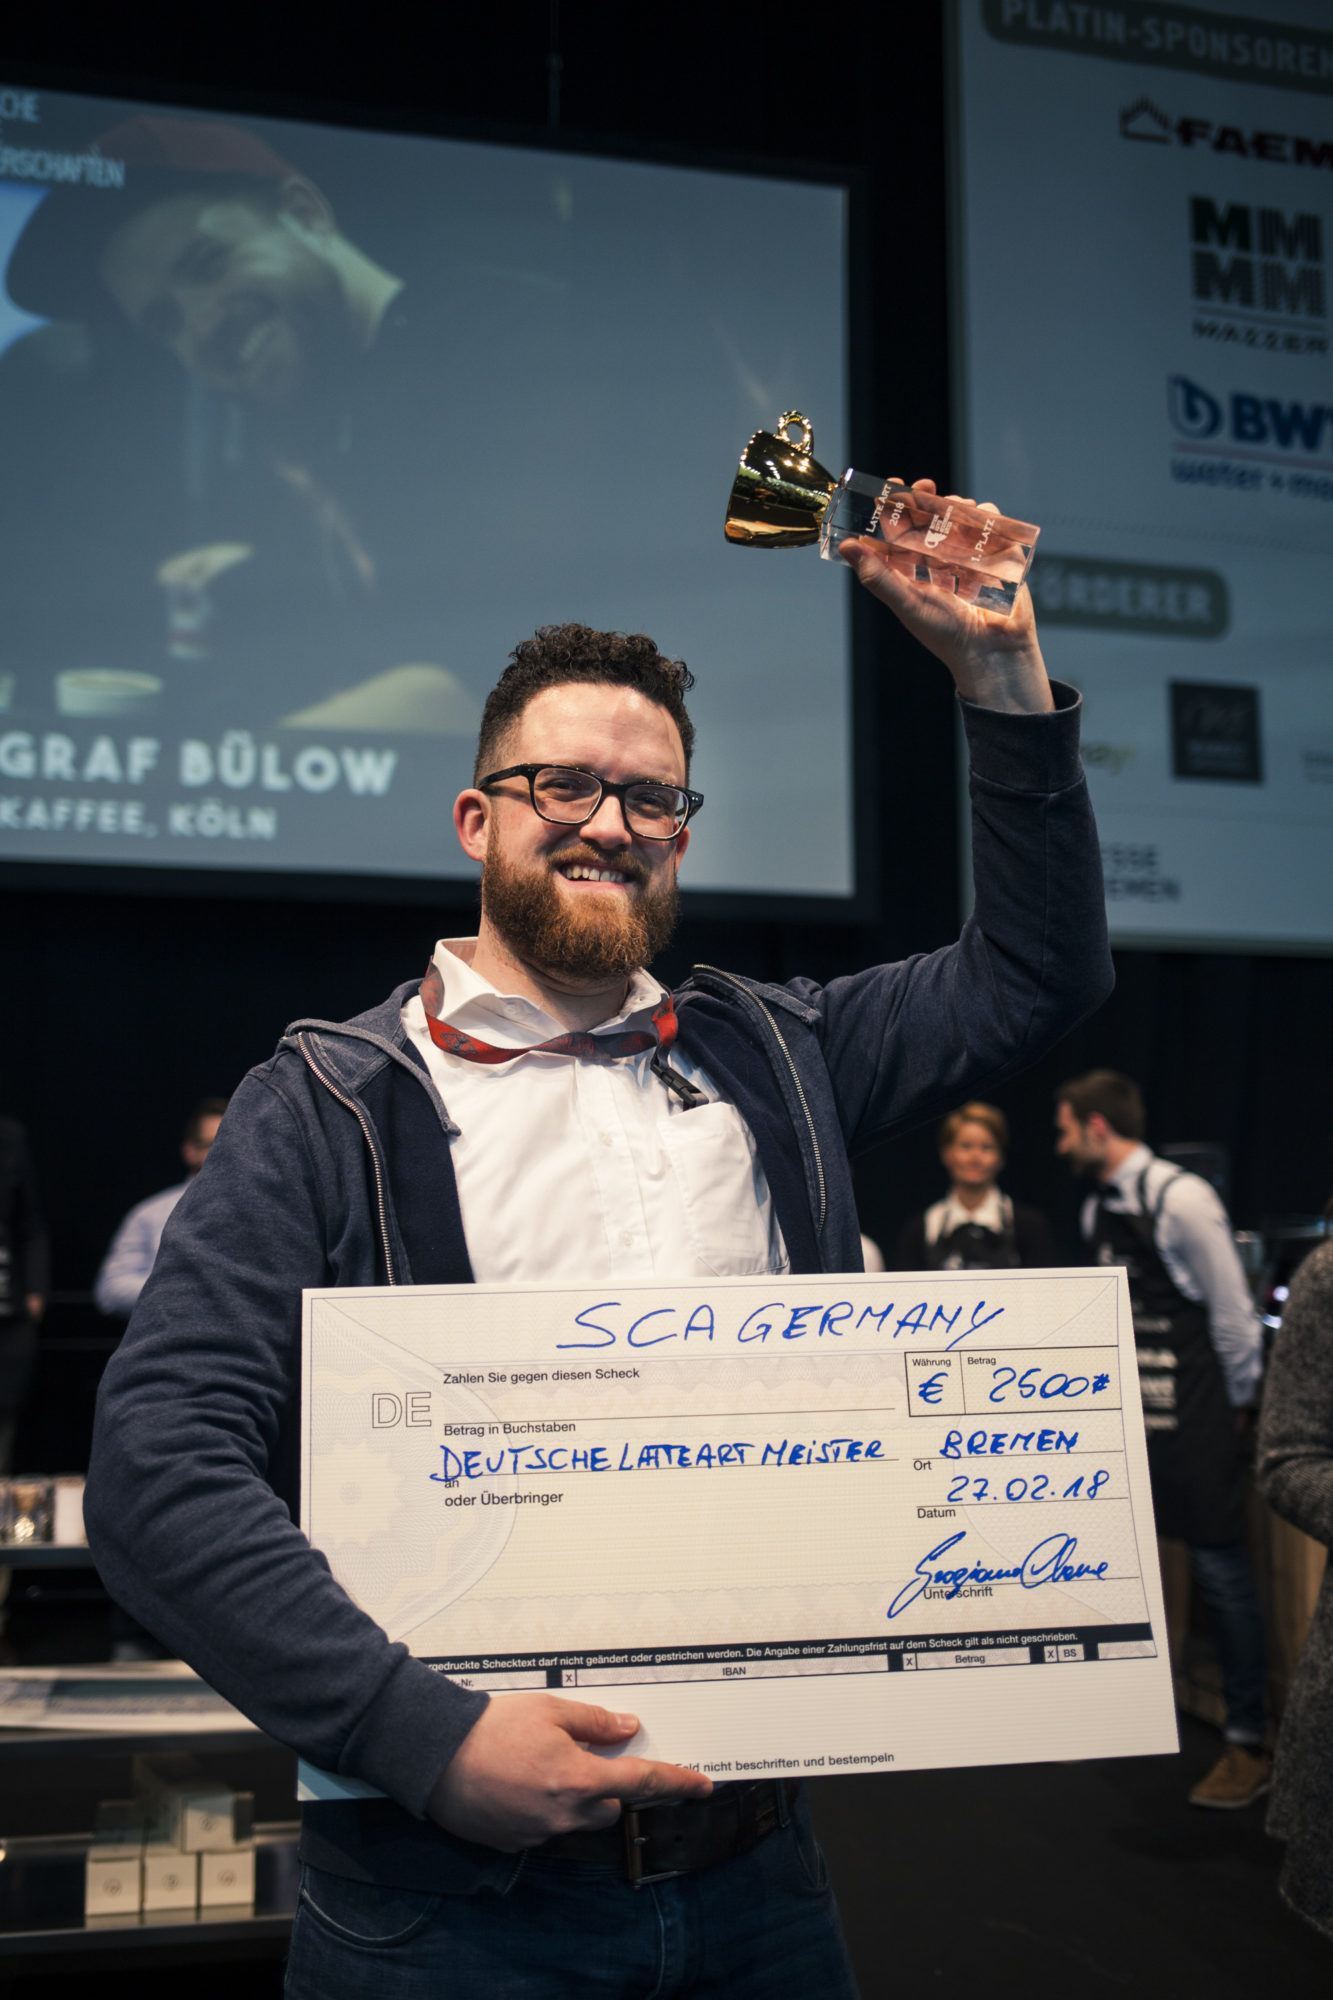 Ein Mann mit Bart und Brille, der sich freut. In der rechten Hand hält er einen übergroßen Scheck über 2500 Euro, mit der linken hebt er einen kleinen Pokal in die Höhe.